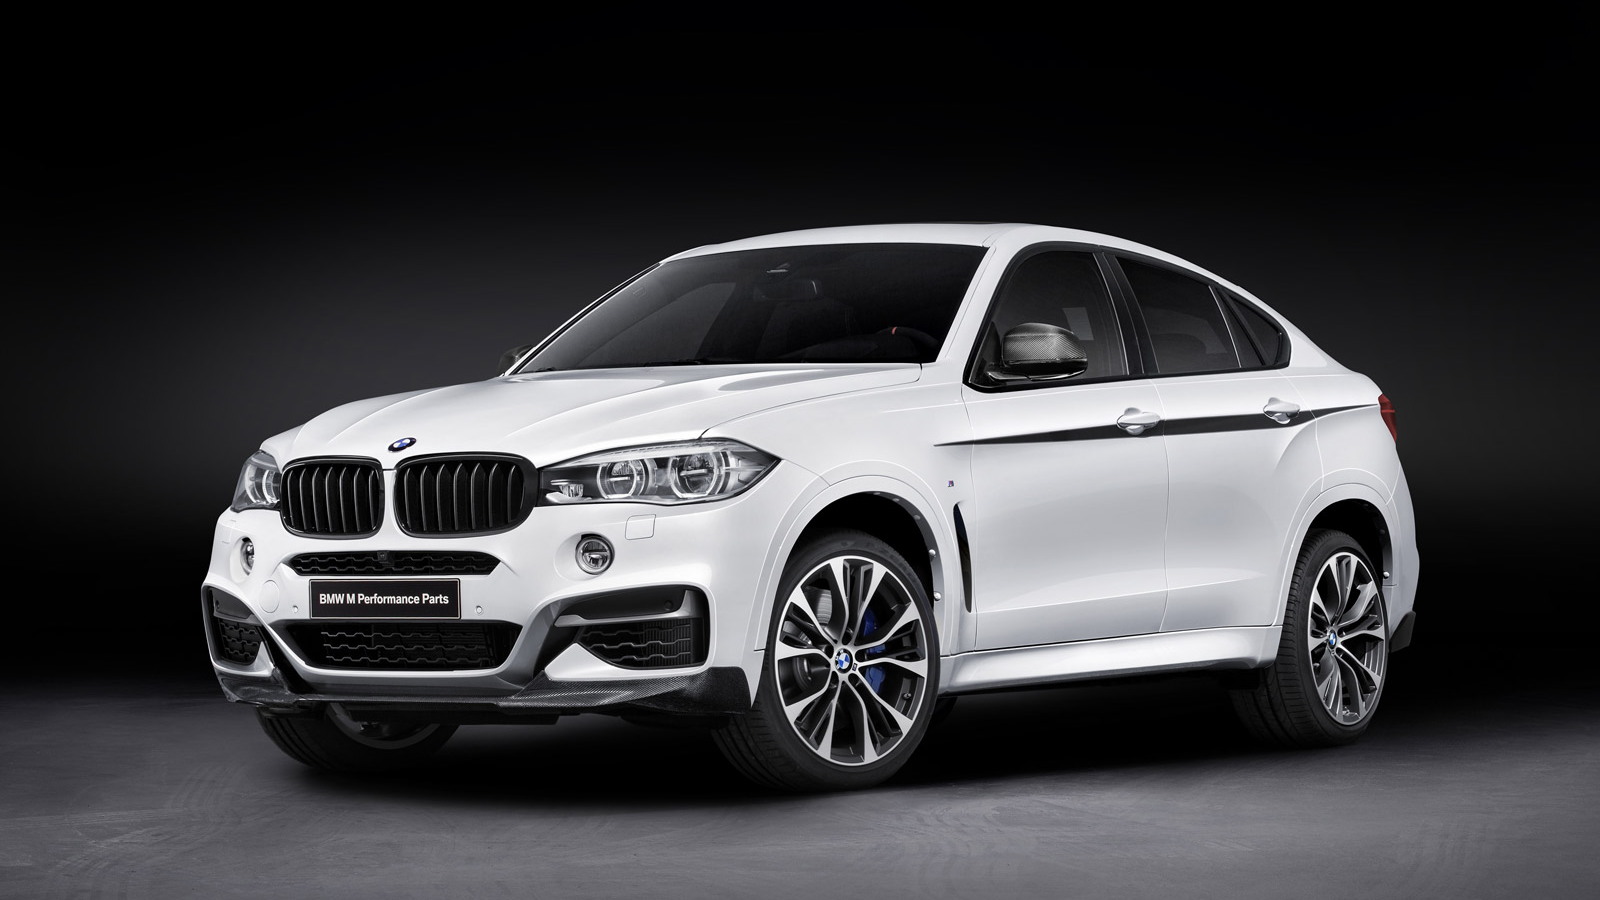 2015 BMW X6 with BMW M Performance upgrades